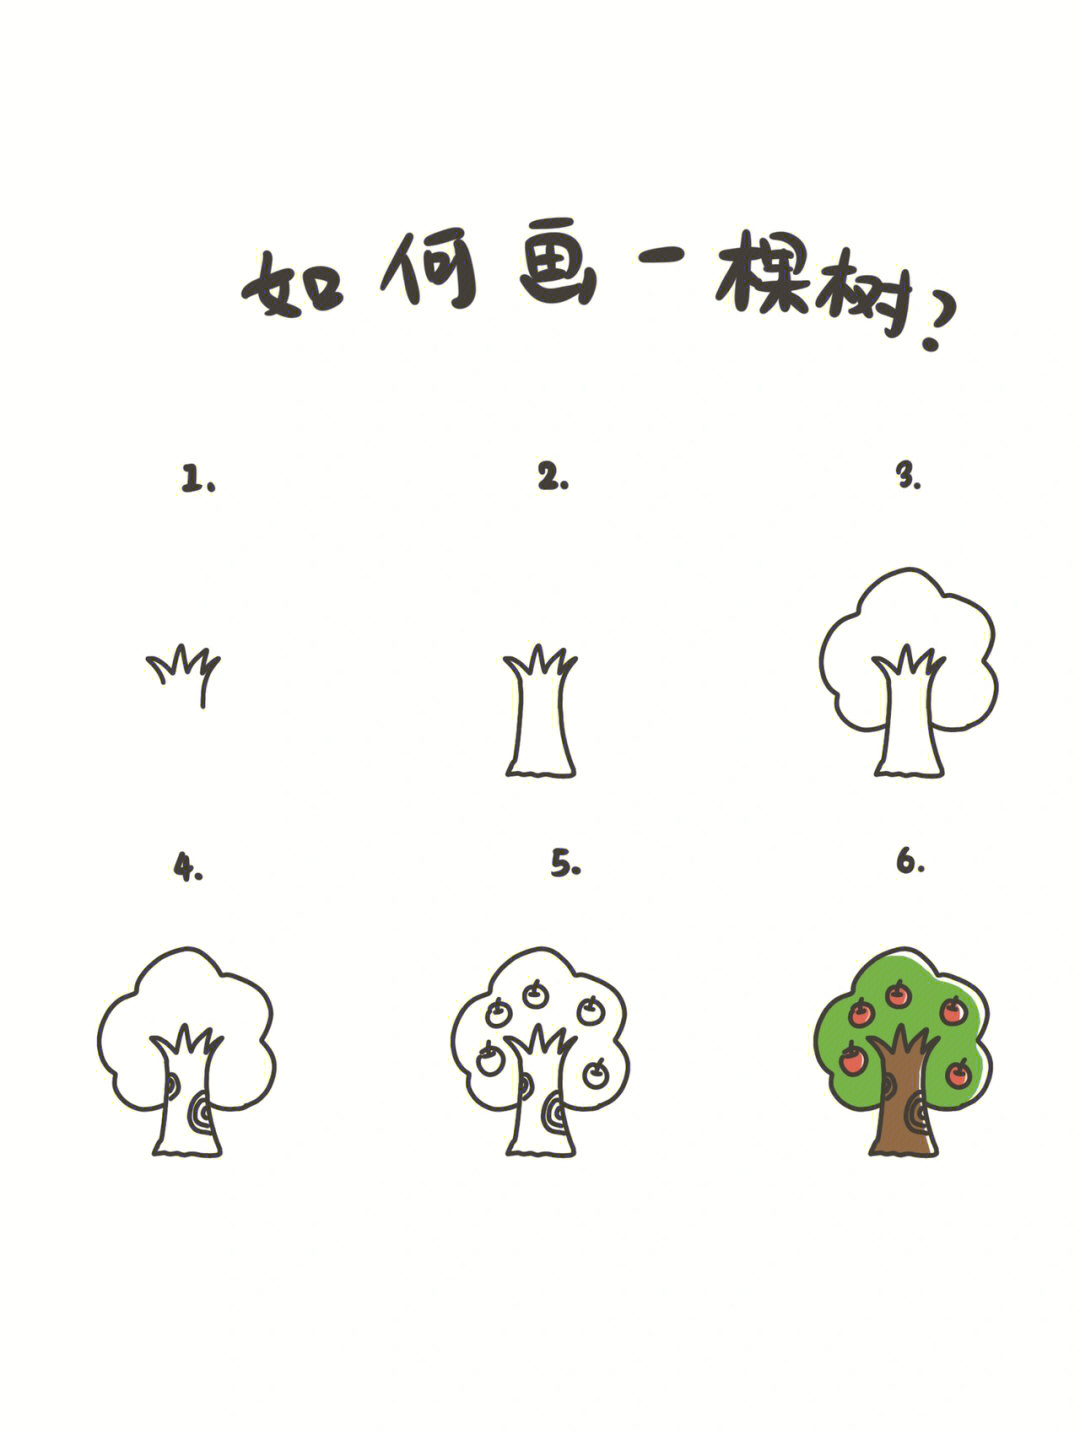 大树怎么画最美又简单图片